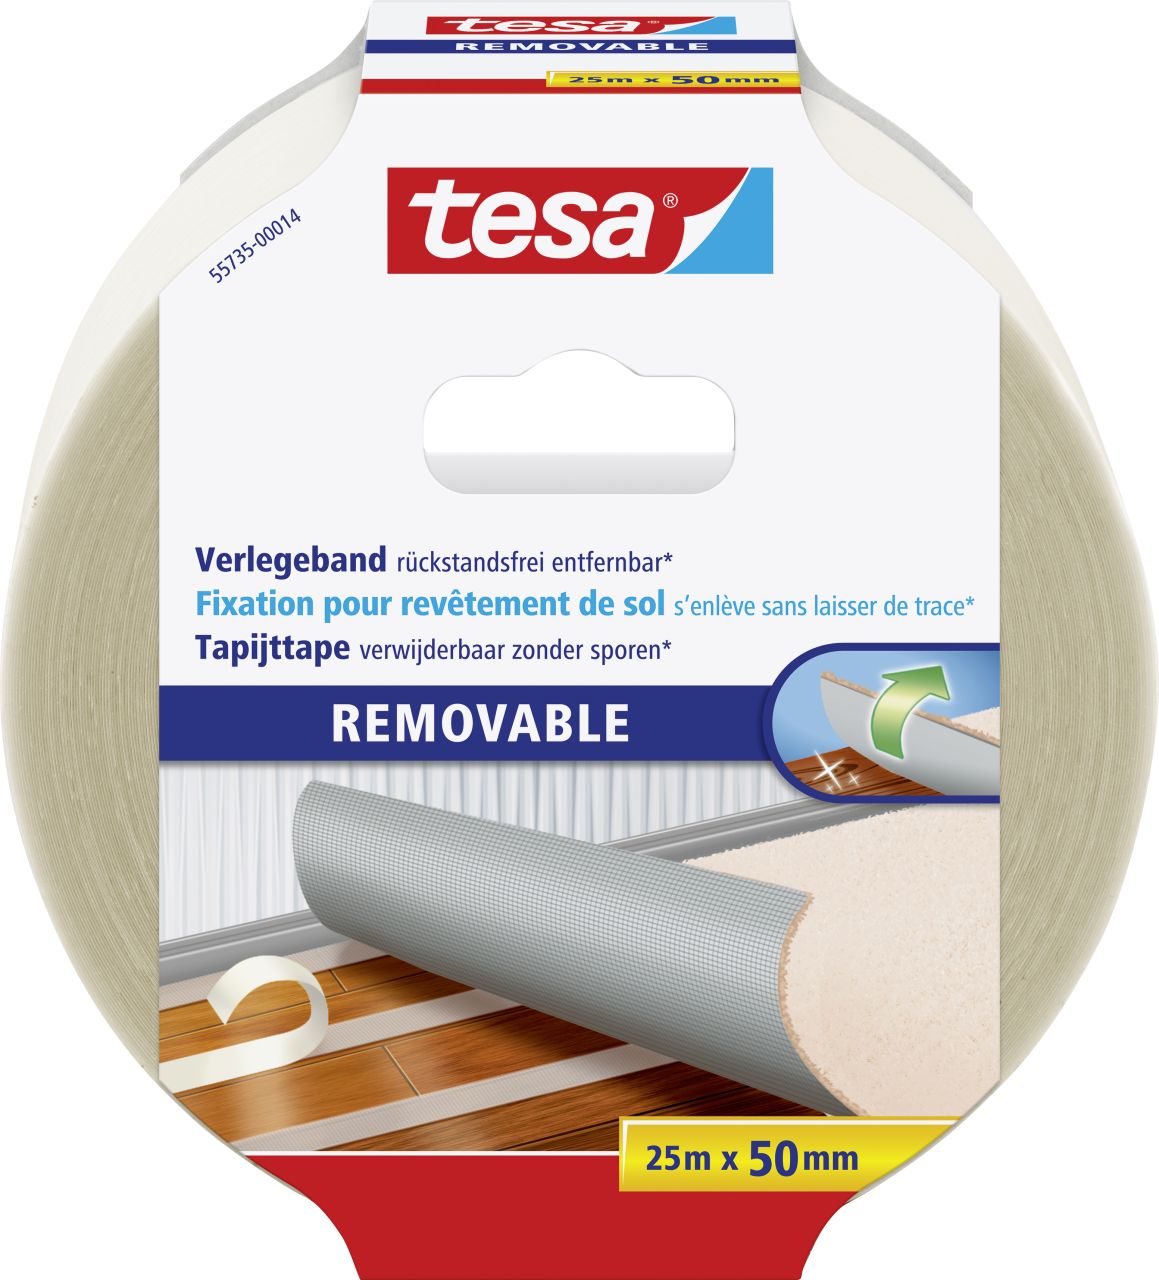 tesa Verlegeband 25 m x 50 mm, gewebeverstärkt, rückstandsfrei entfernbar von Tesa